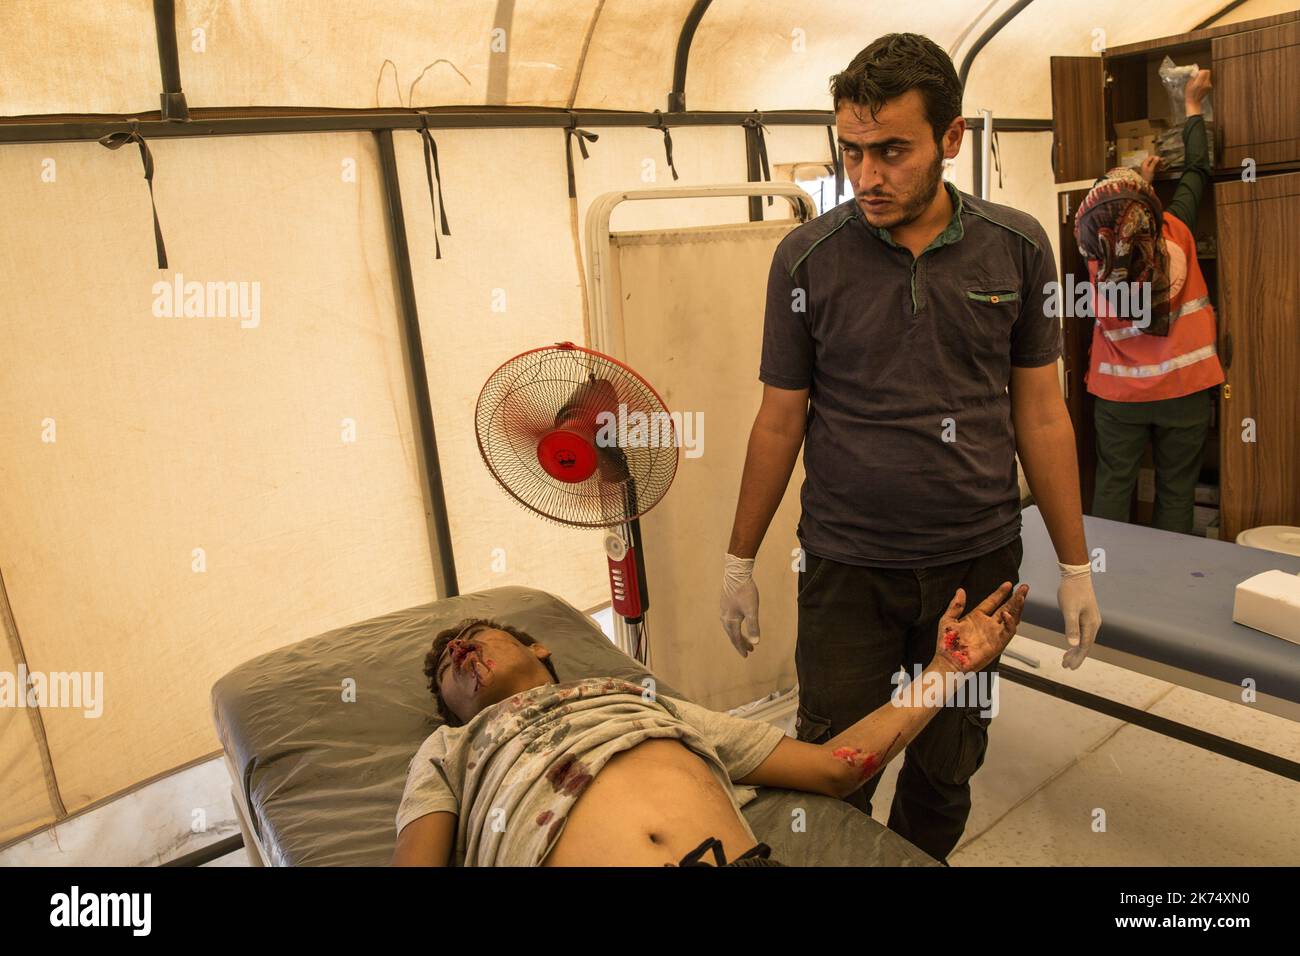 Juillet 2017 - Syrie - Rojava - Syrie du Nord - Camp de deplaces d'Ain Issa / Clinique MSF / Un syrien originaire de Raqqa a eu un accident de mobylette hors du camp. Les medecins interviennent aussi vite, le soignant de toute part Stock Photo